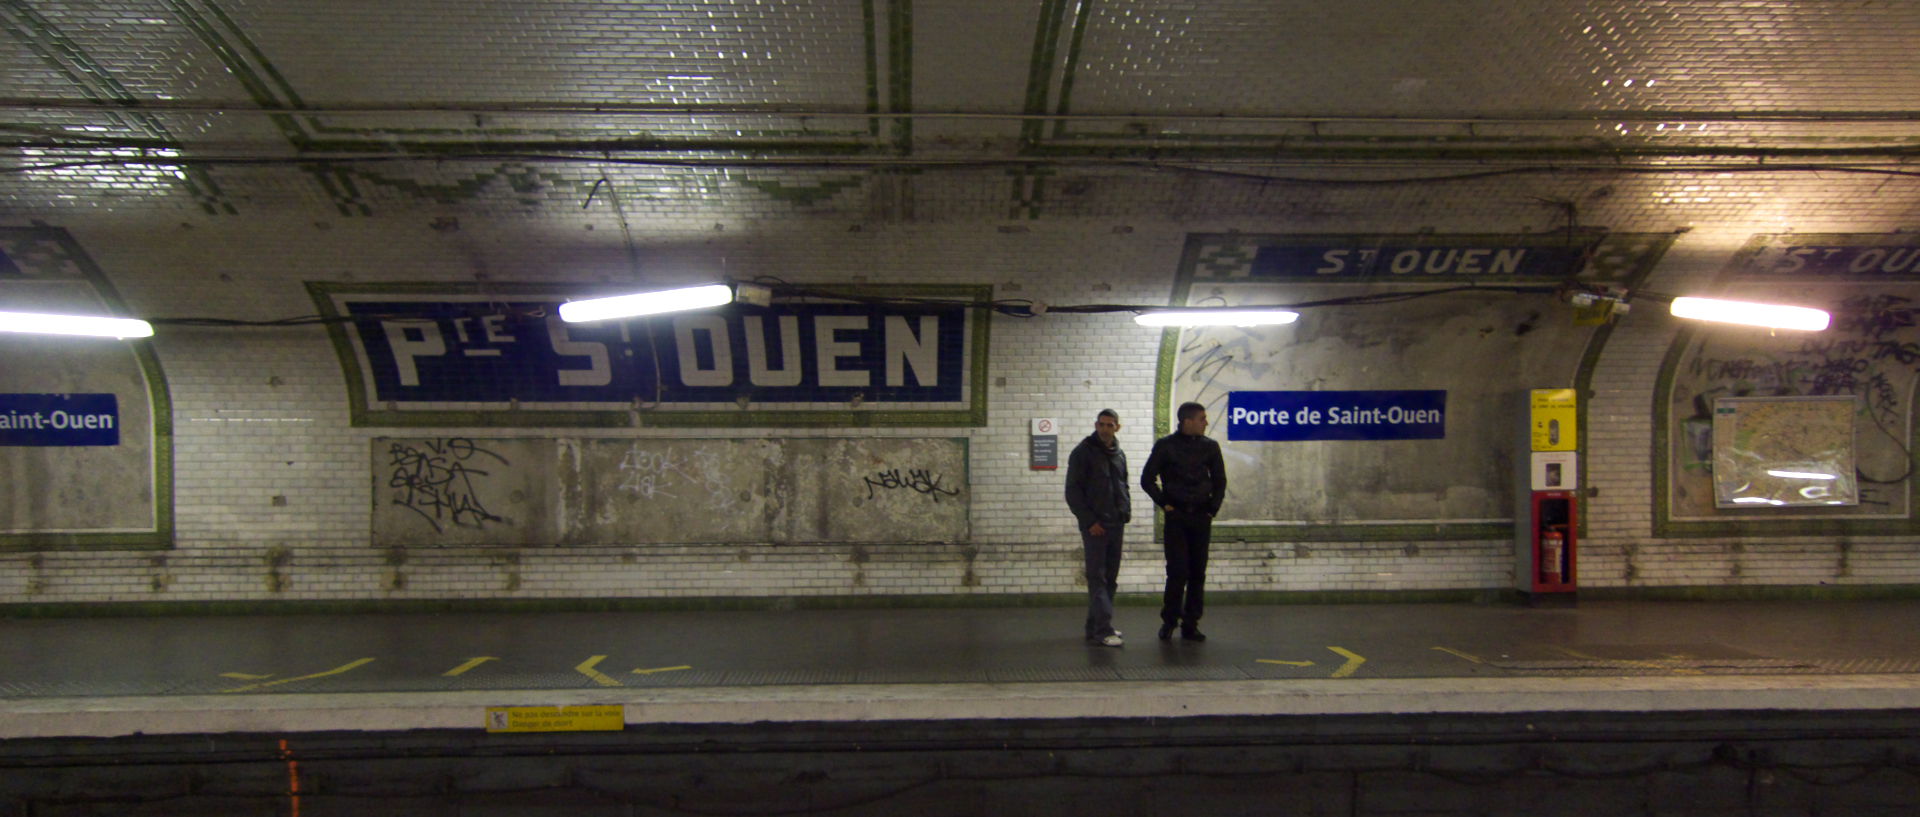 Mardi 9 décembre 2008 (3), station de métro porte de Saint-Ouen, à Paris.